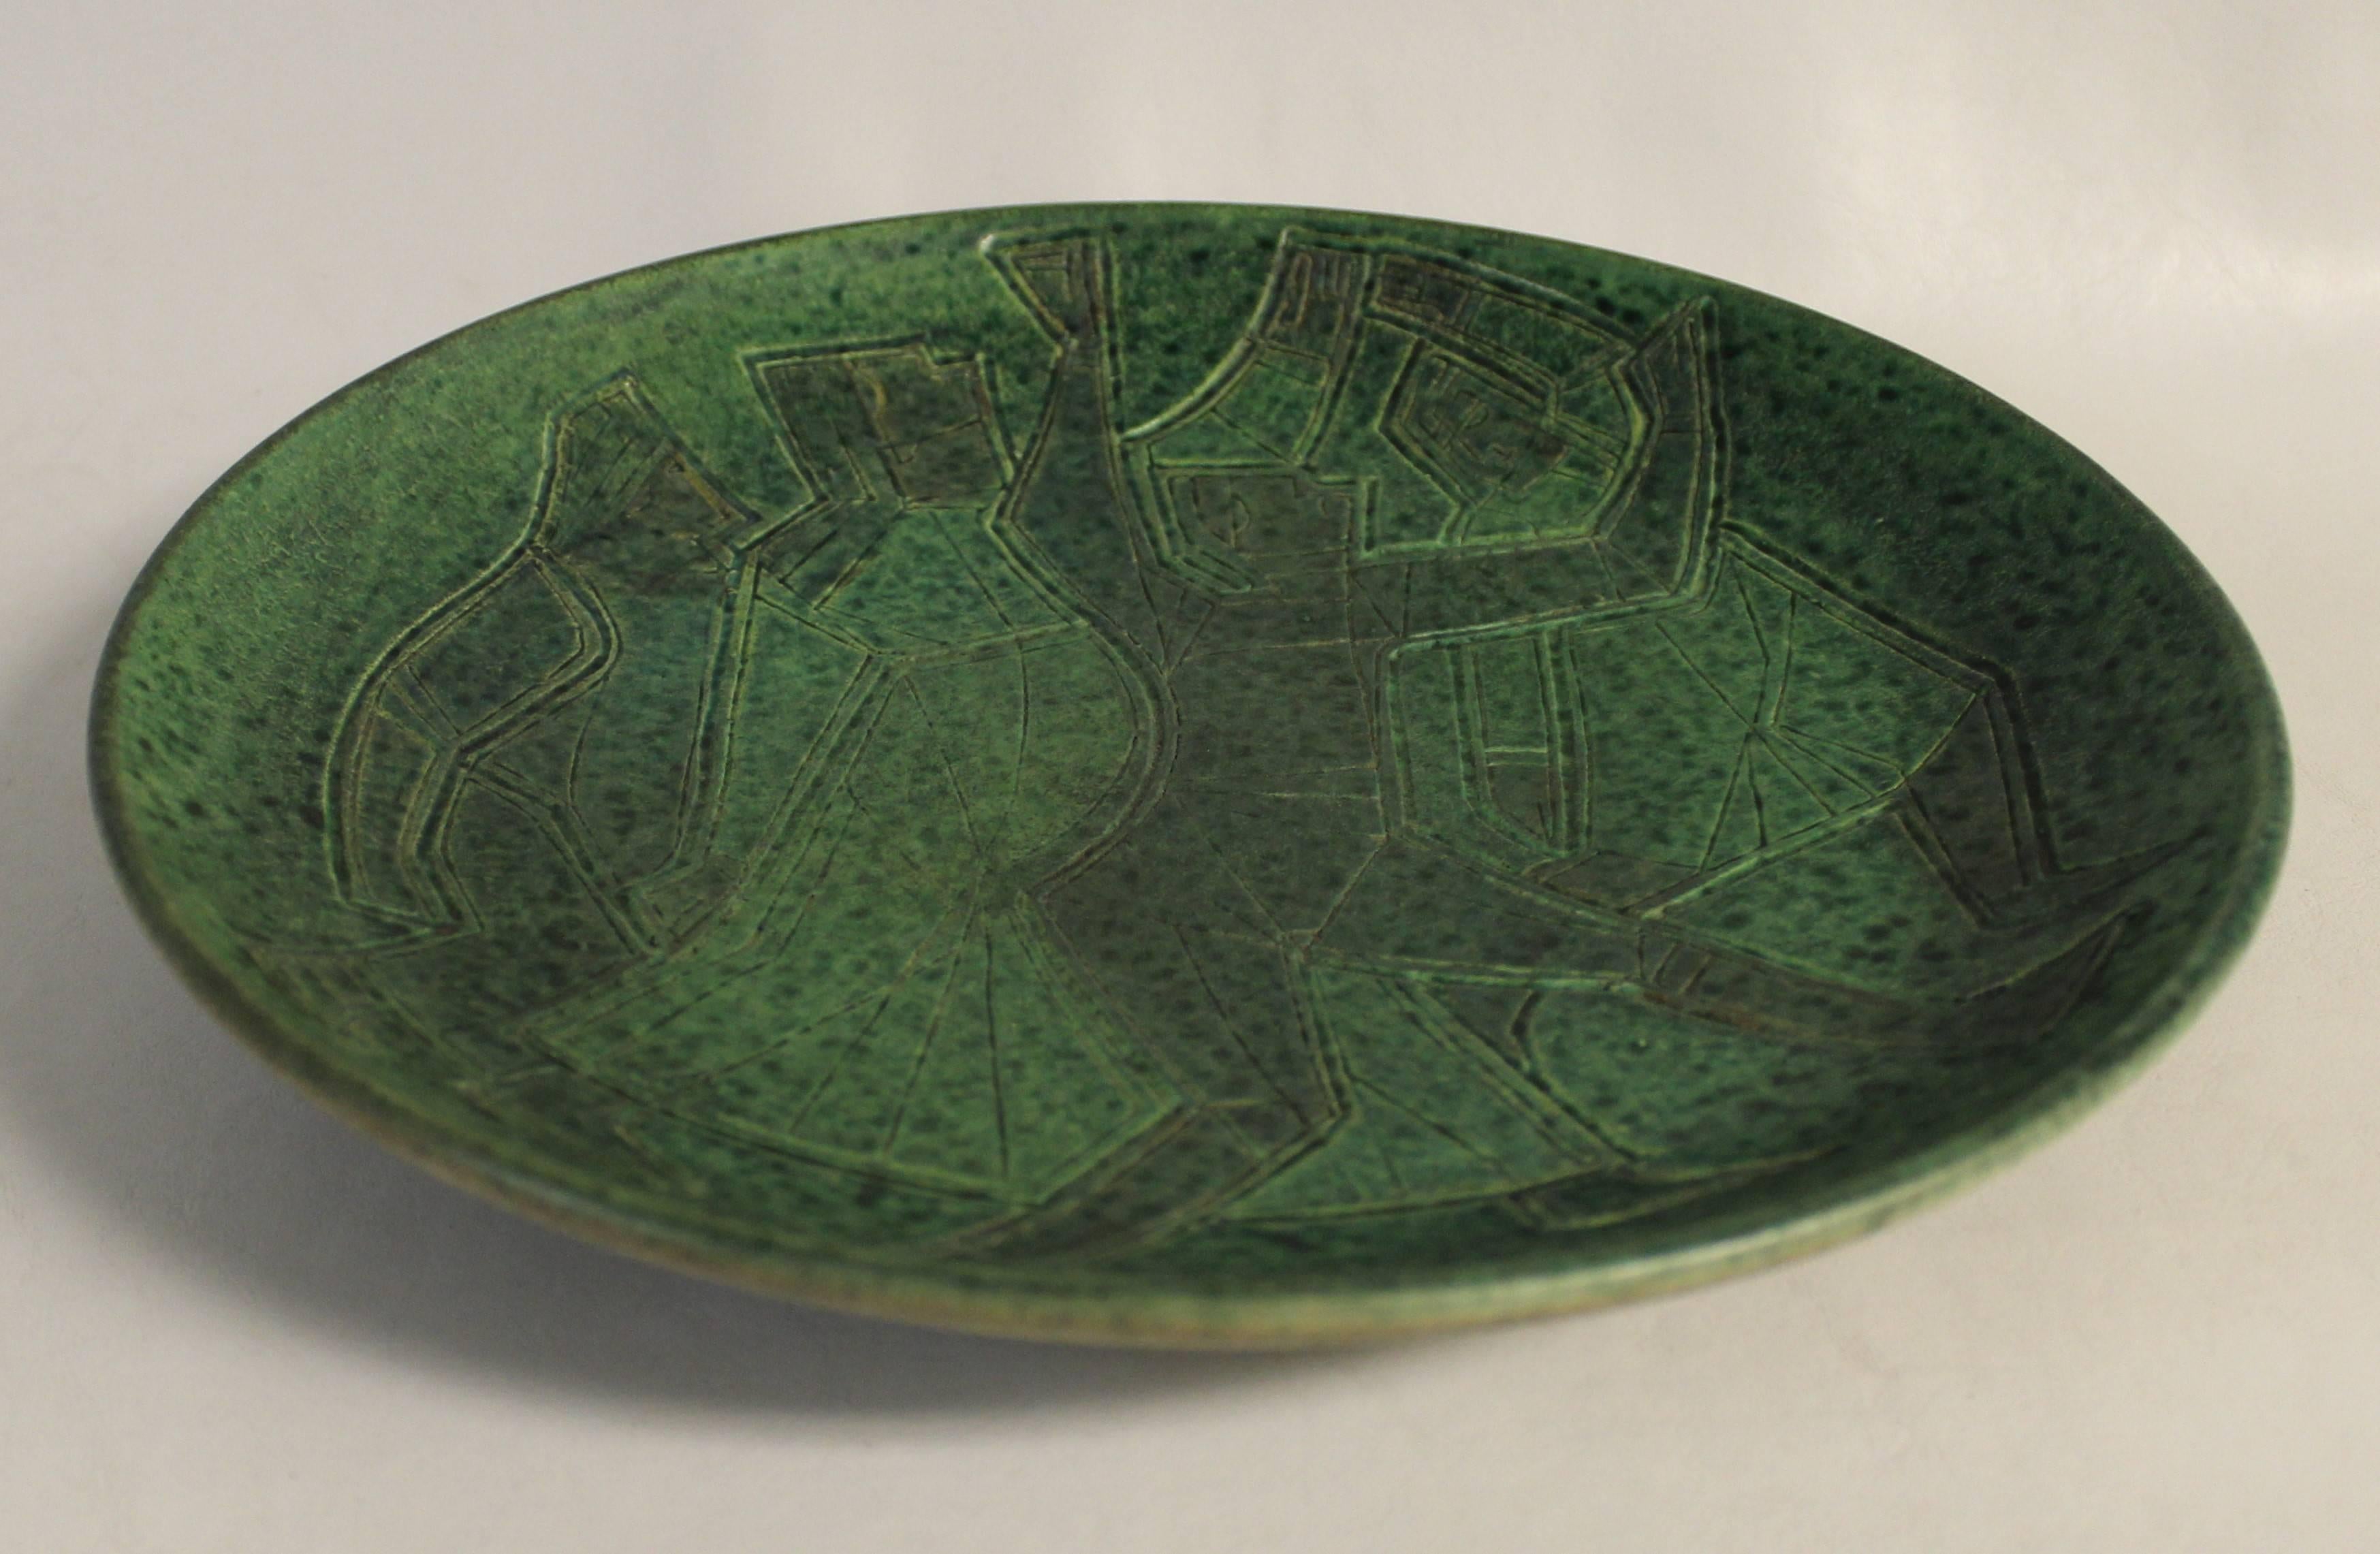 Studio Pottery Mid-Century Modern Teller von Theo und Susan Harlander von Brooklin Pottery, Brooklin, Ontario. Diese Schale wurde in einem skurrilen kubistischen Stil mit eingeritzten Figuren und einer grün gesprenkelten Glasur entworfen. 

Die